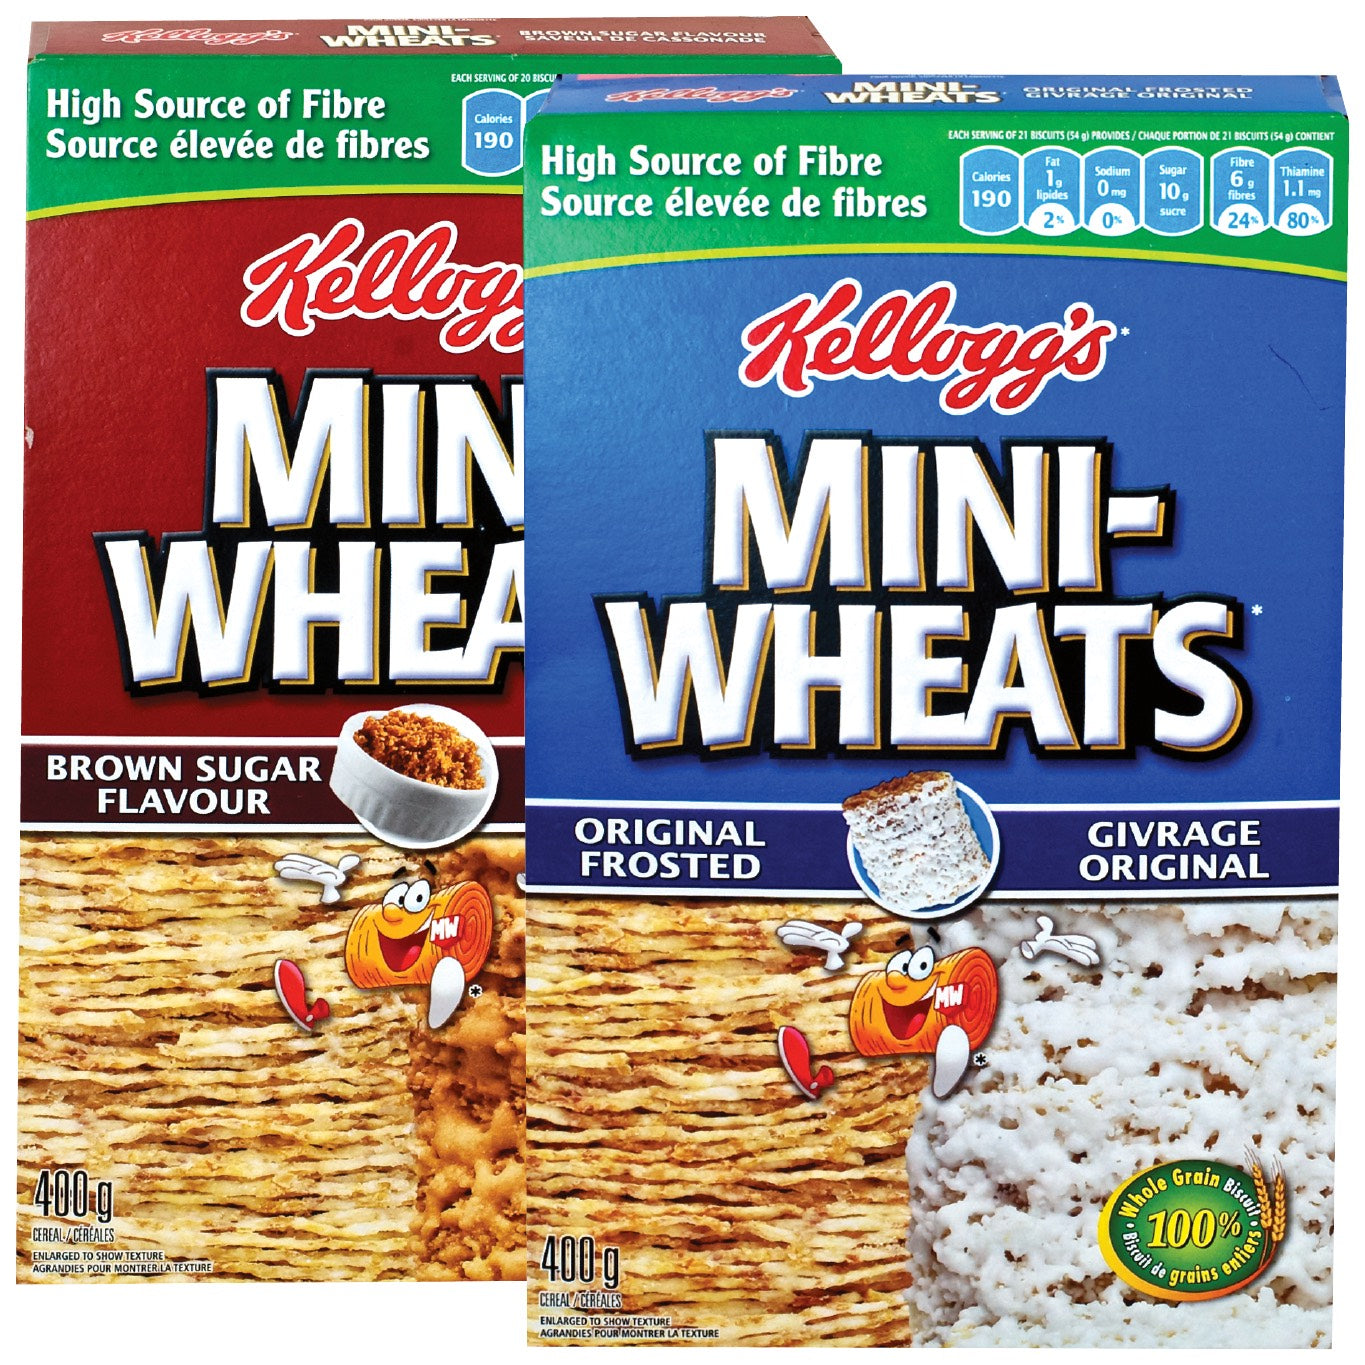 Mini Wheats Cereal